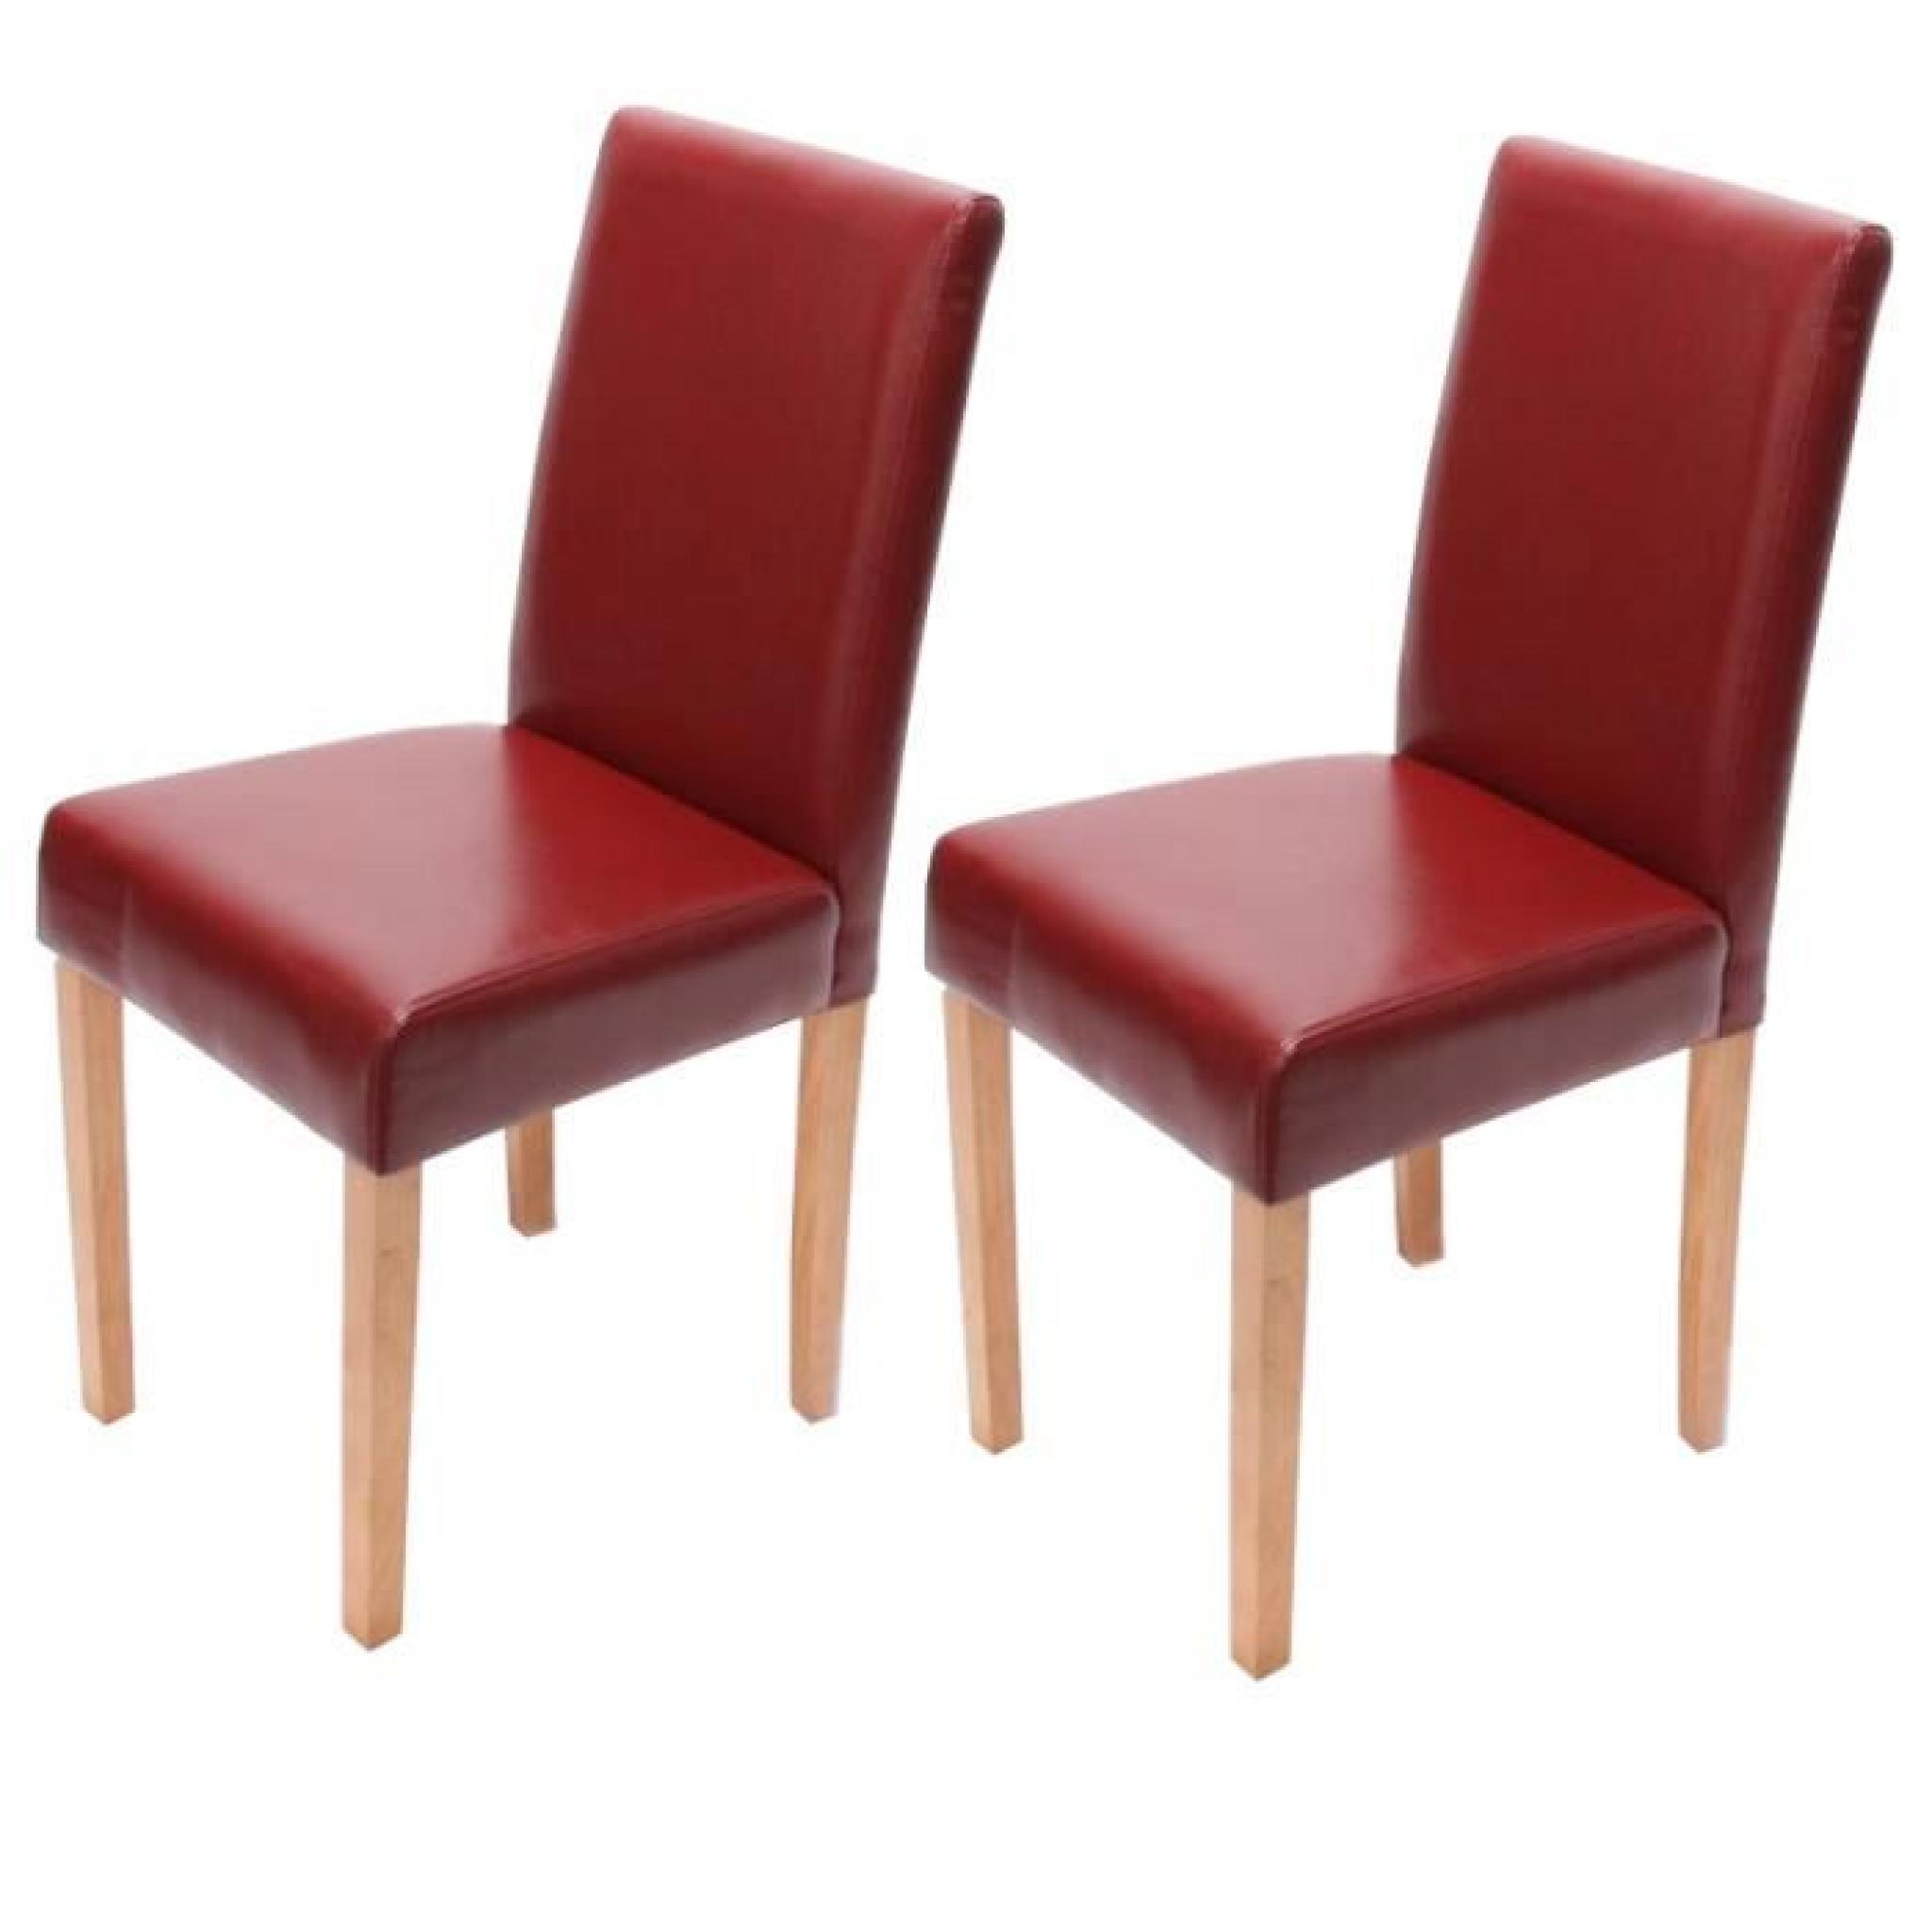  2 chaises Rouge similicuir pieds clair très confortable